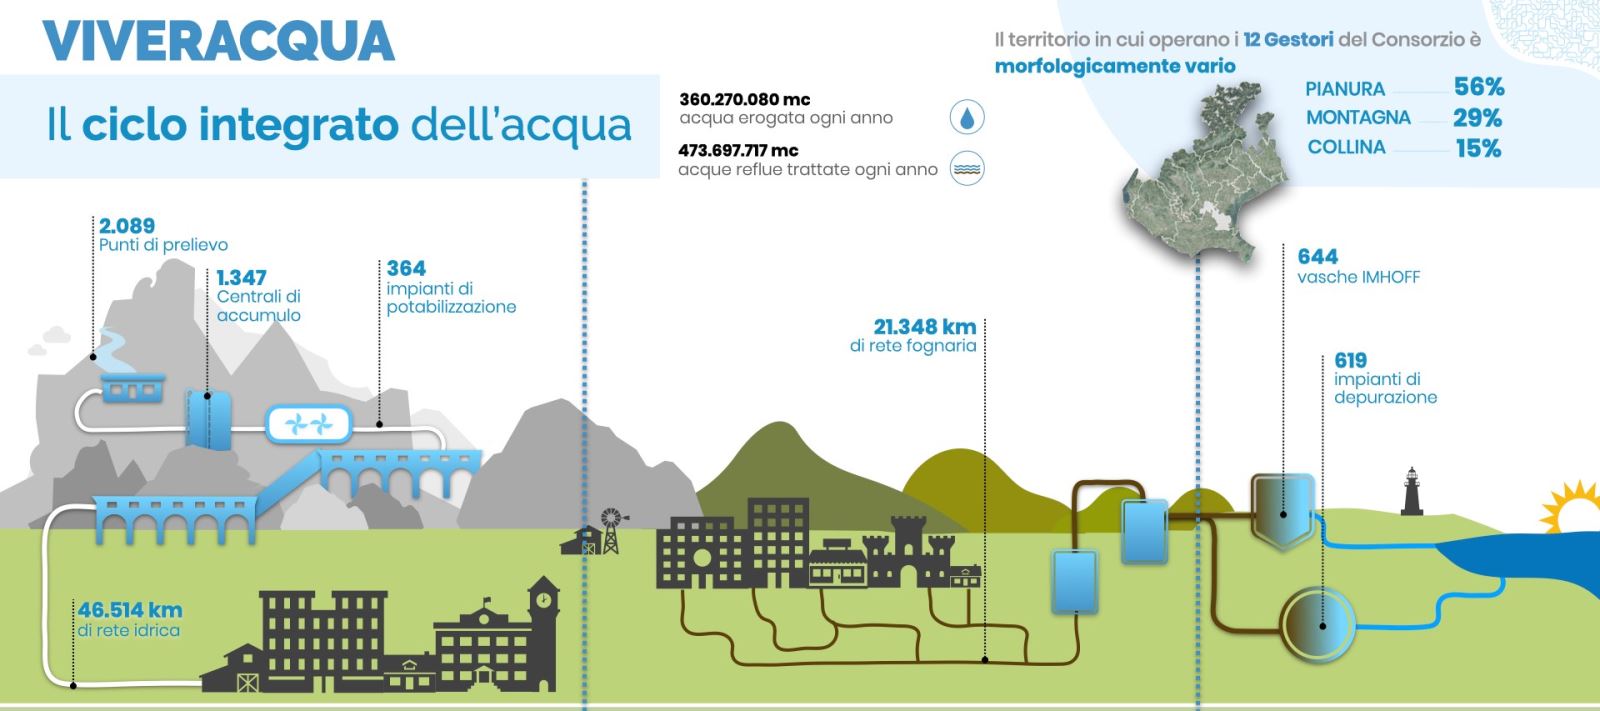 Viveracqua, 187 milioni di euro investiti in un anno per la gestione sostenibile della risorsa idrica